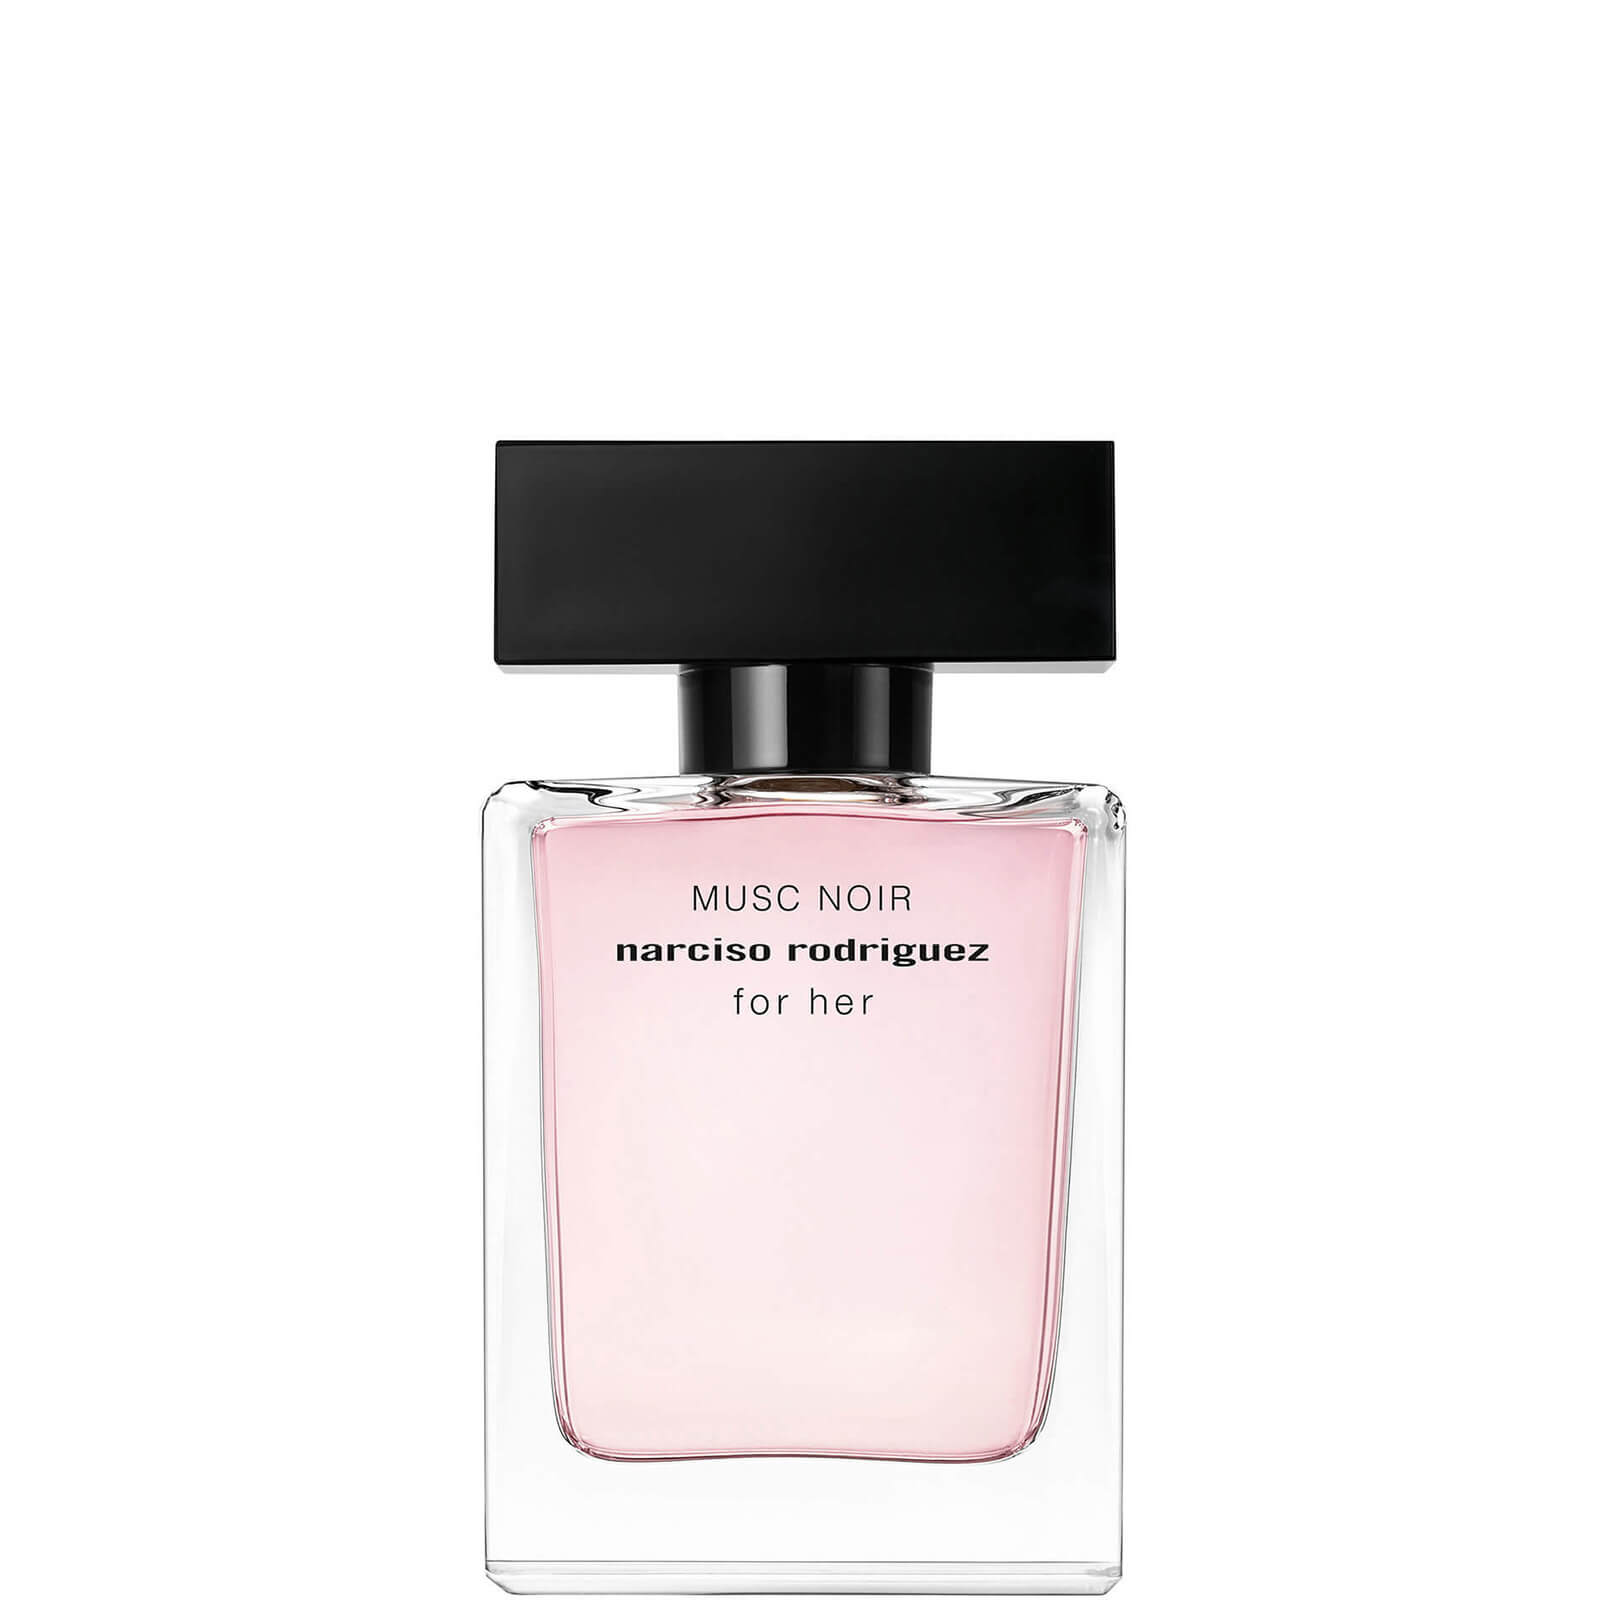 Narciso Rodriguez for Her Musc Noir Eau de Parfum - 30 ml